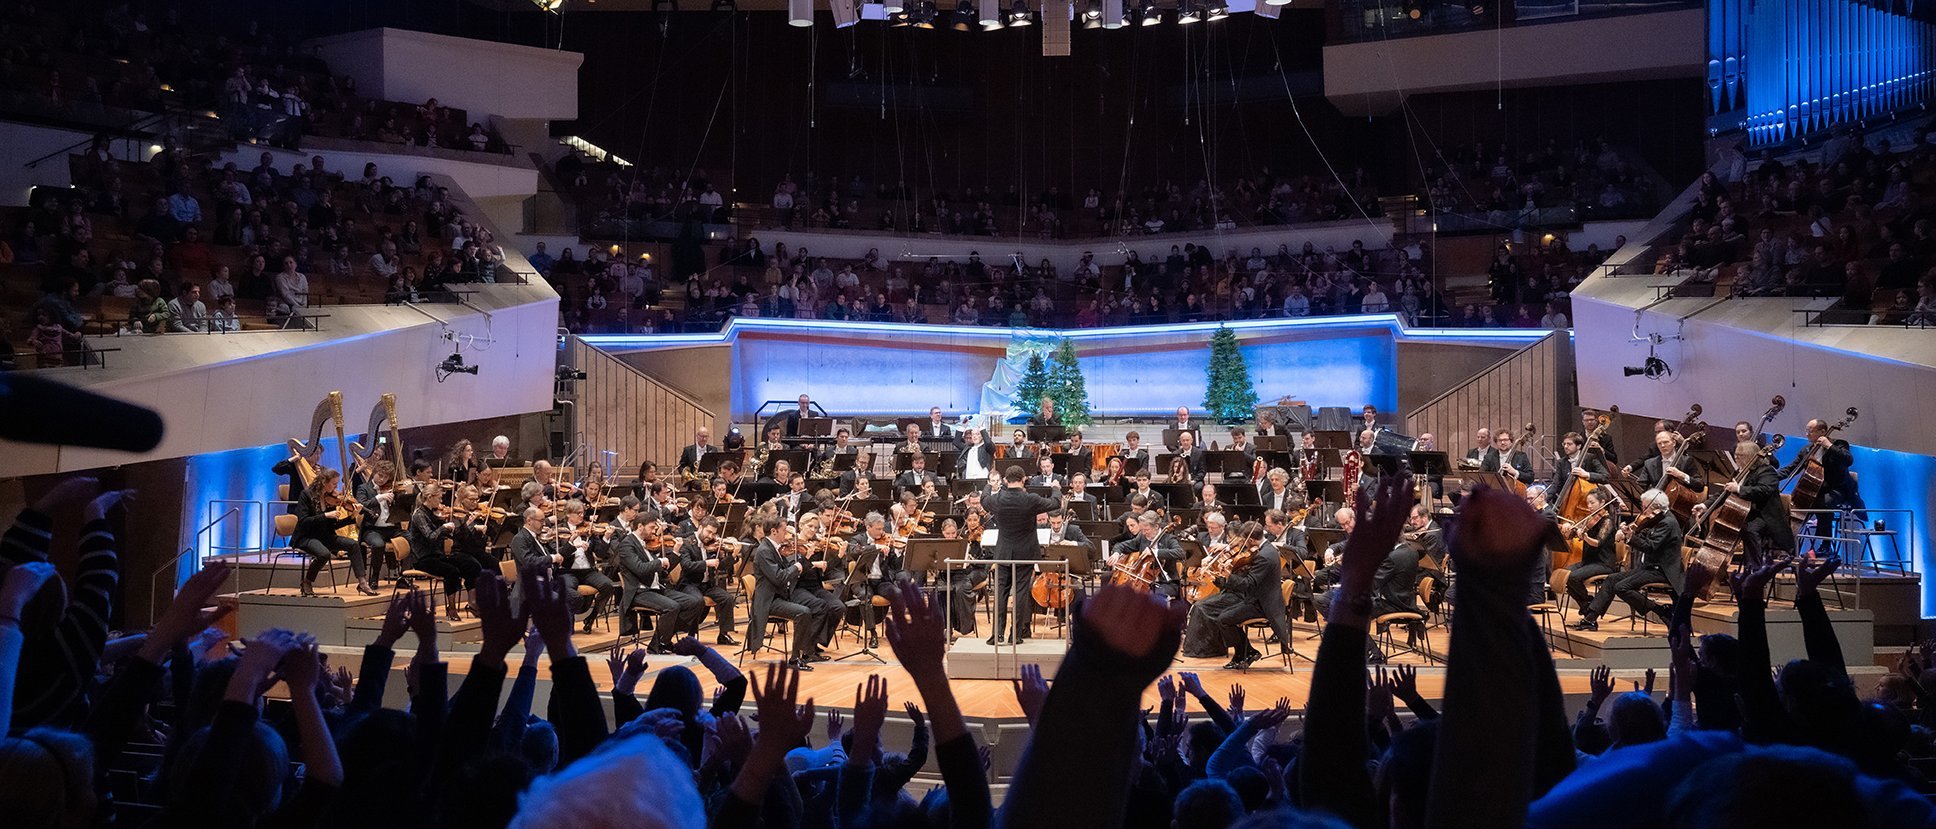 Blick auf die Bühne der Philharmonie Berlin, Publikum im Vordergrund